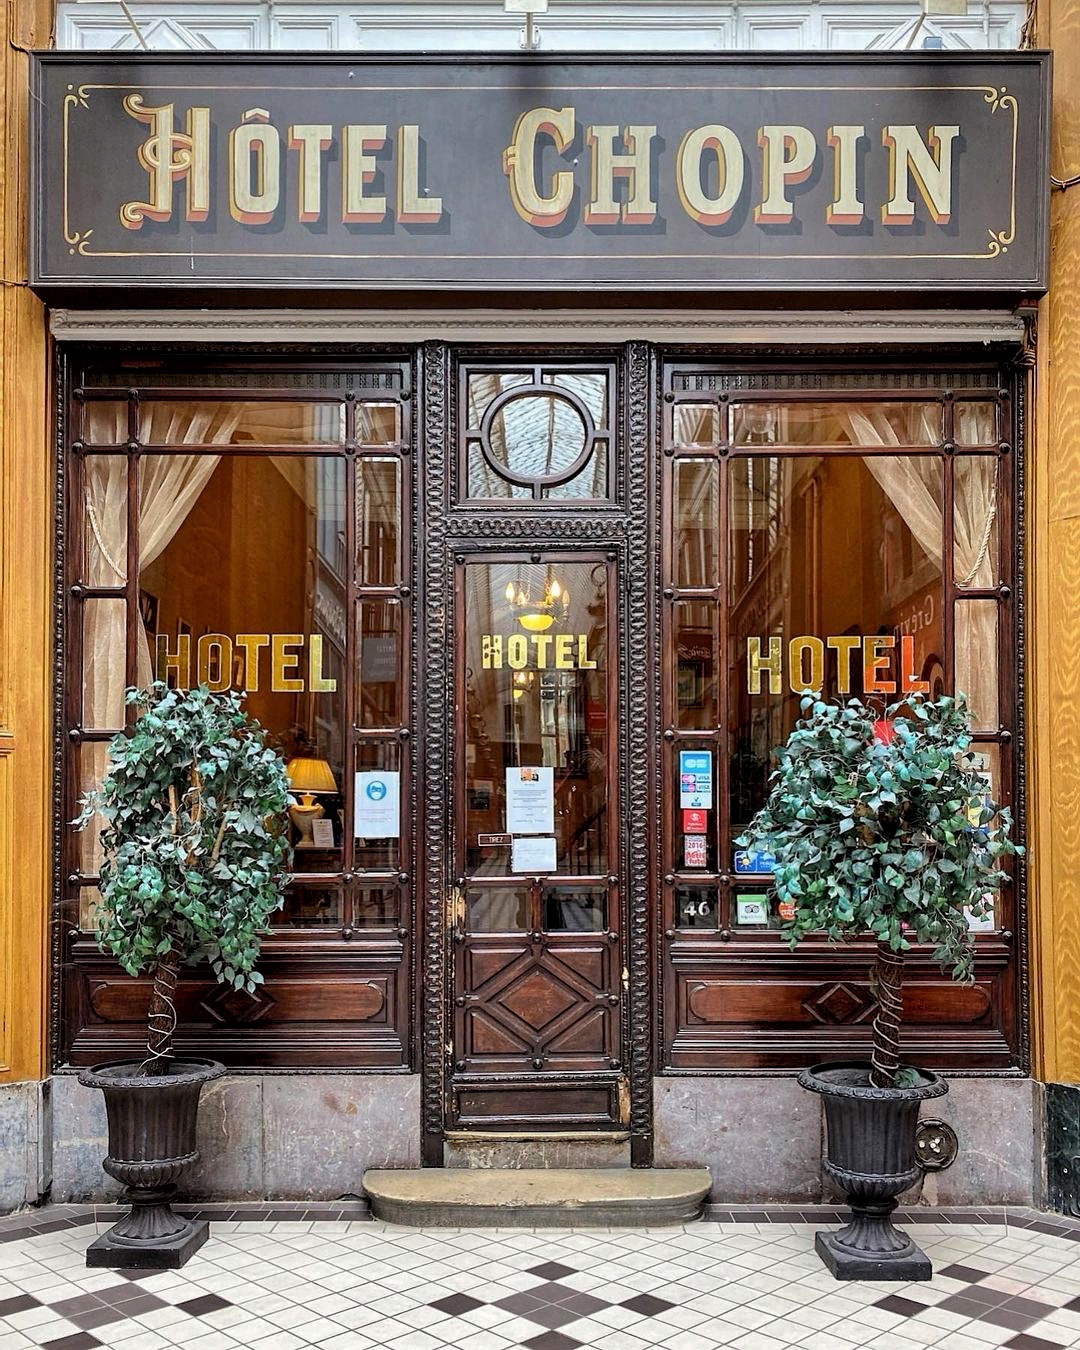 L'hôtel Chopin dans le passage Jouffroy